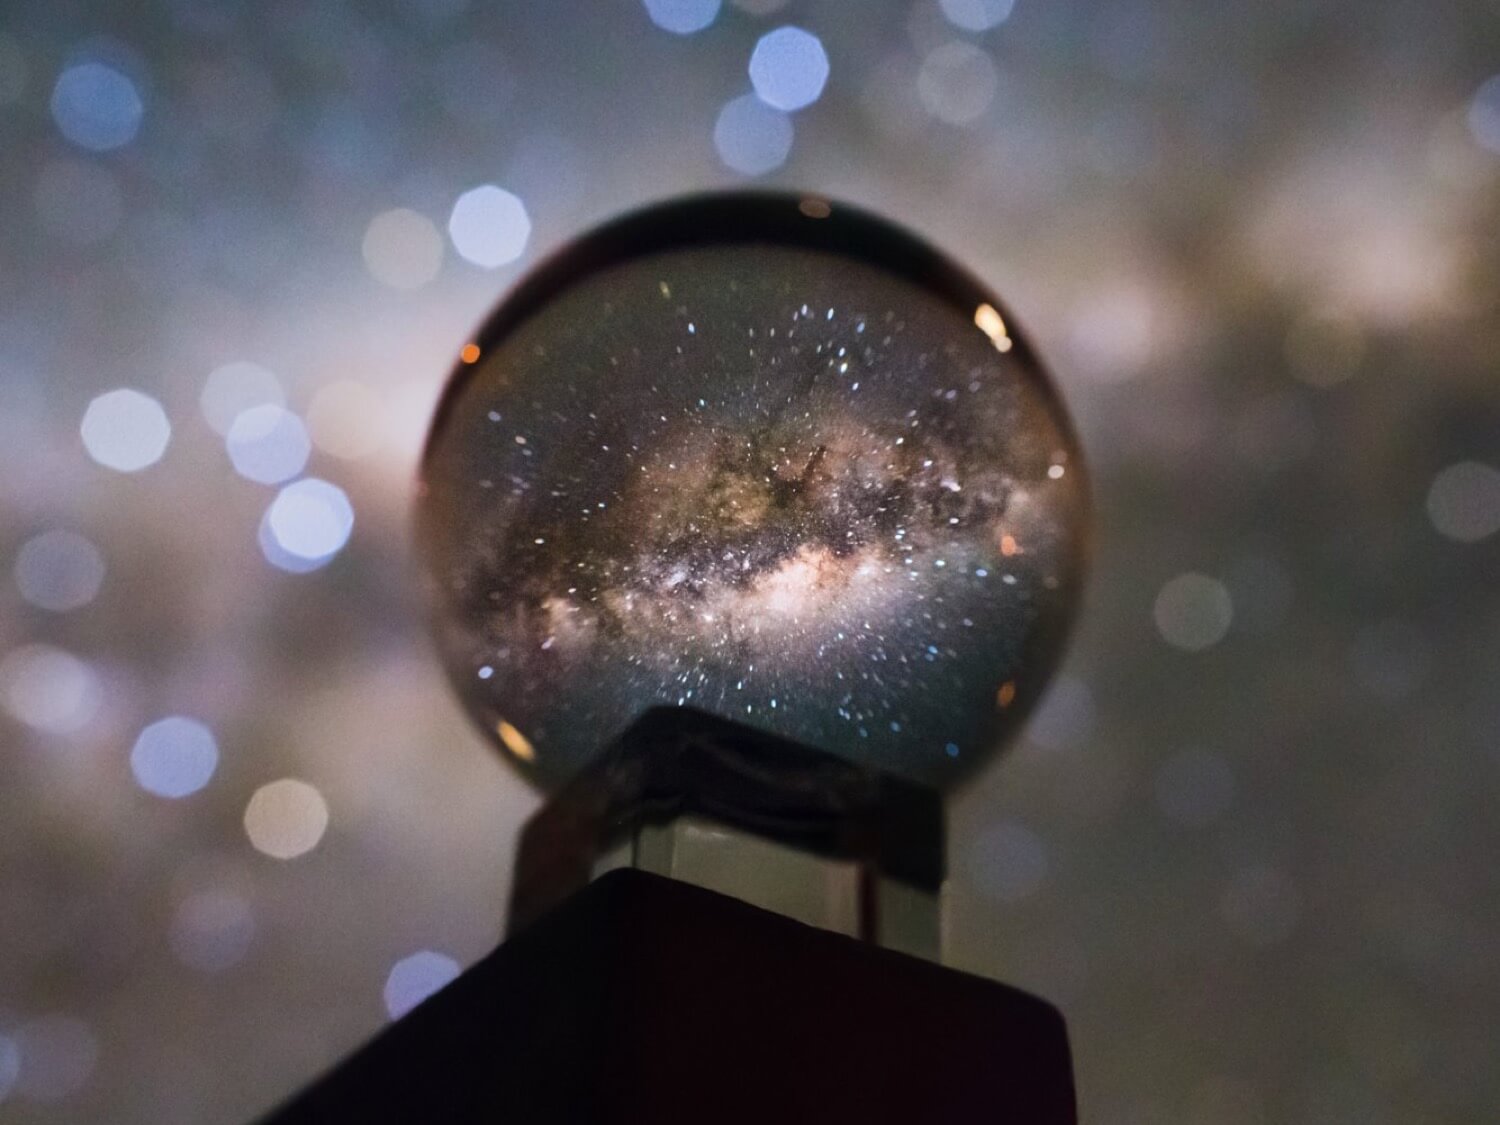 Фотографія Чумацького Шляху через кришталева куля виглядає приголомшливо